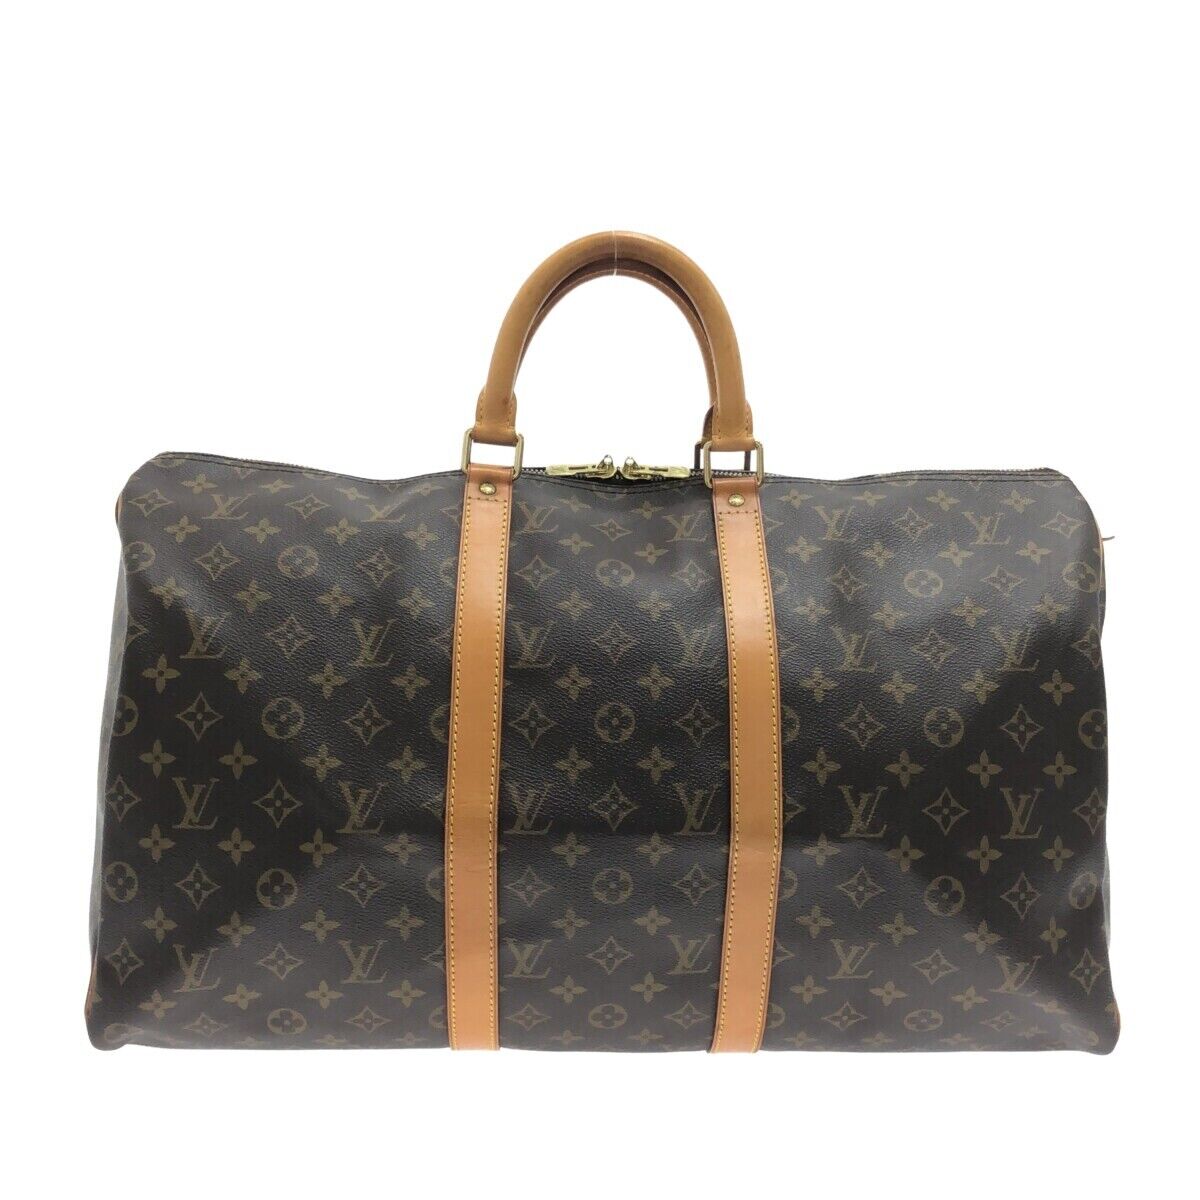 Pre-Owned Louis Vuitton Handbag Shoulder Bag 2Way Masters